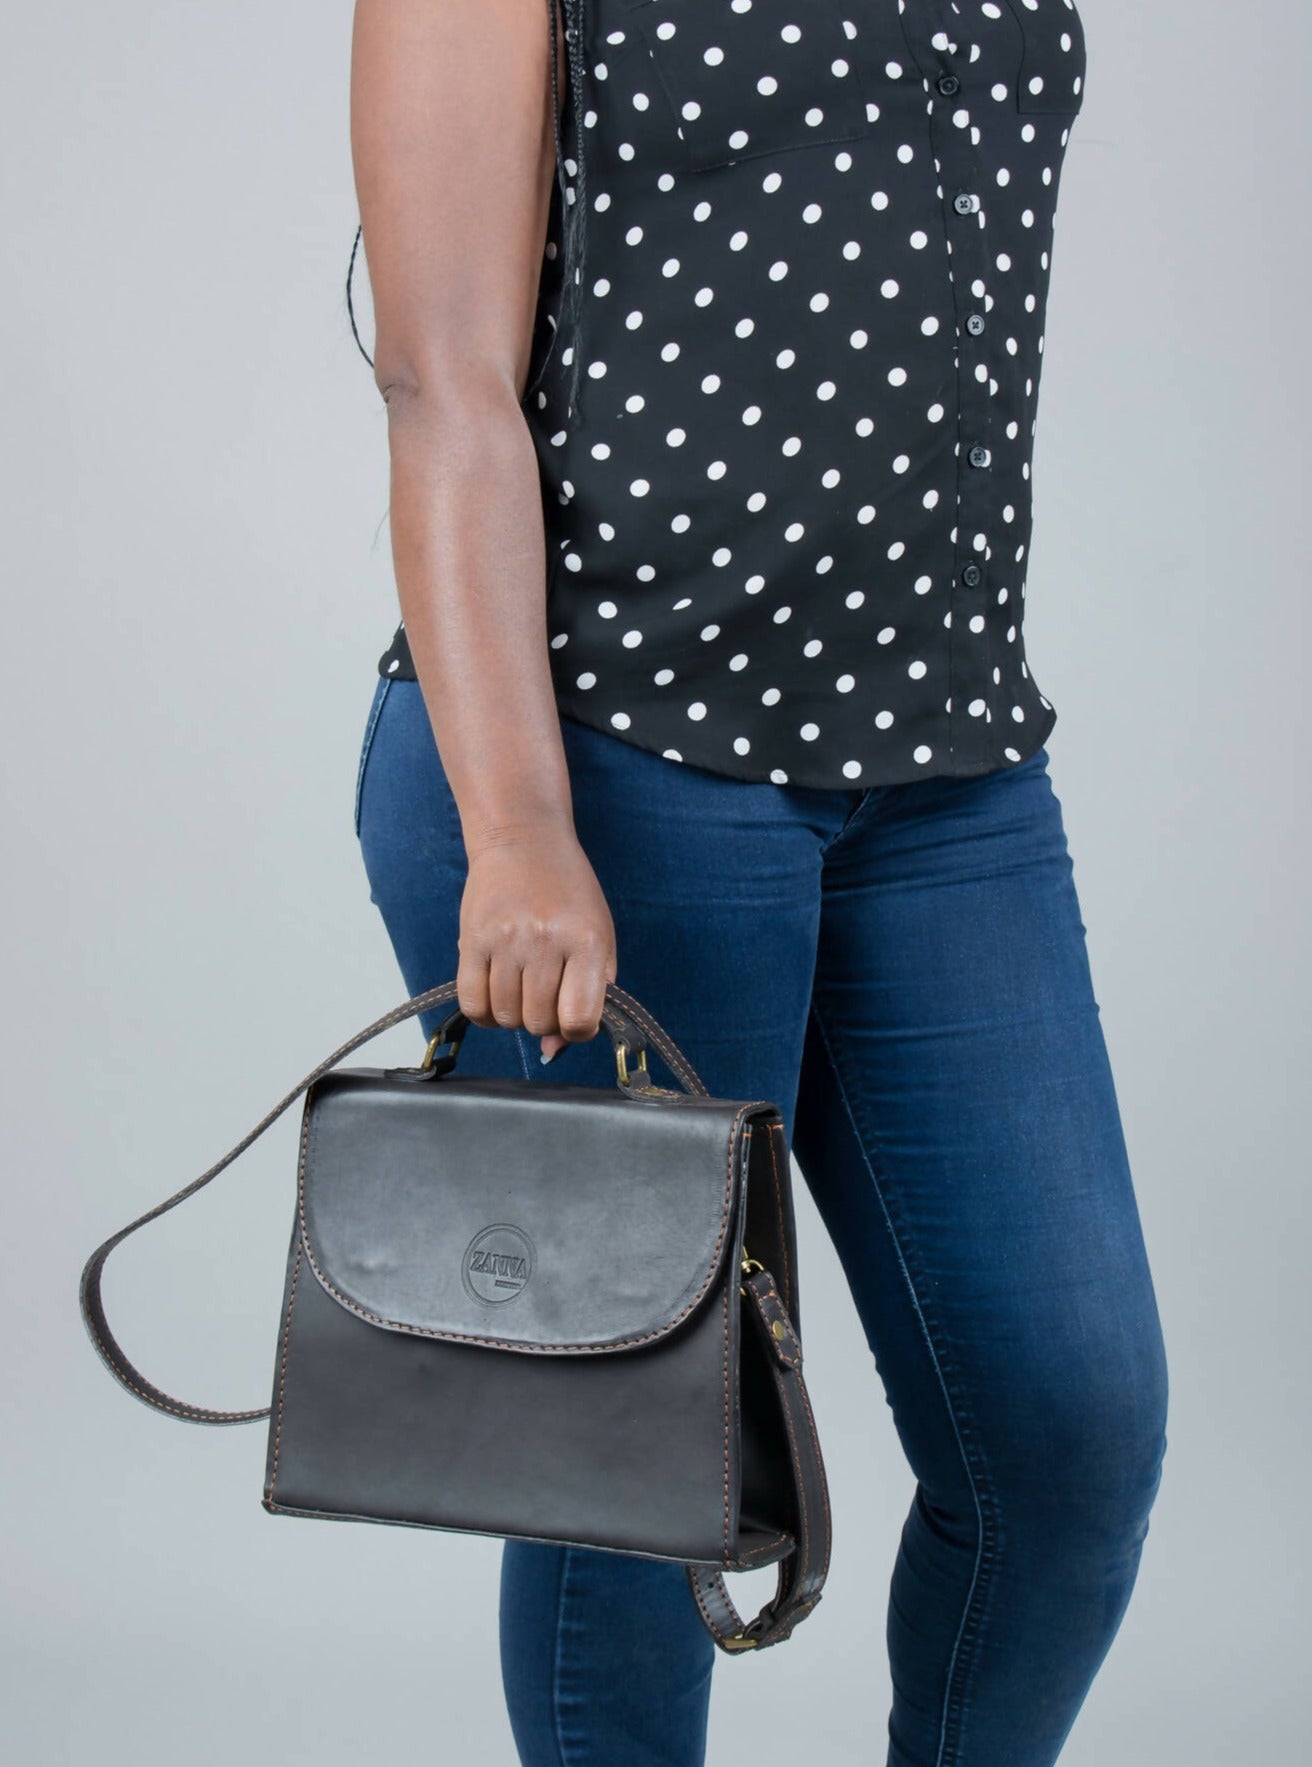 Zanna Leathers Zawadi Handbag - Black